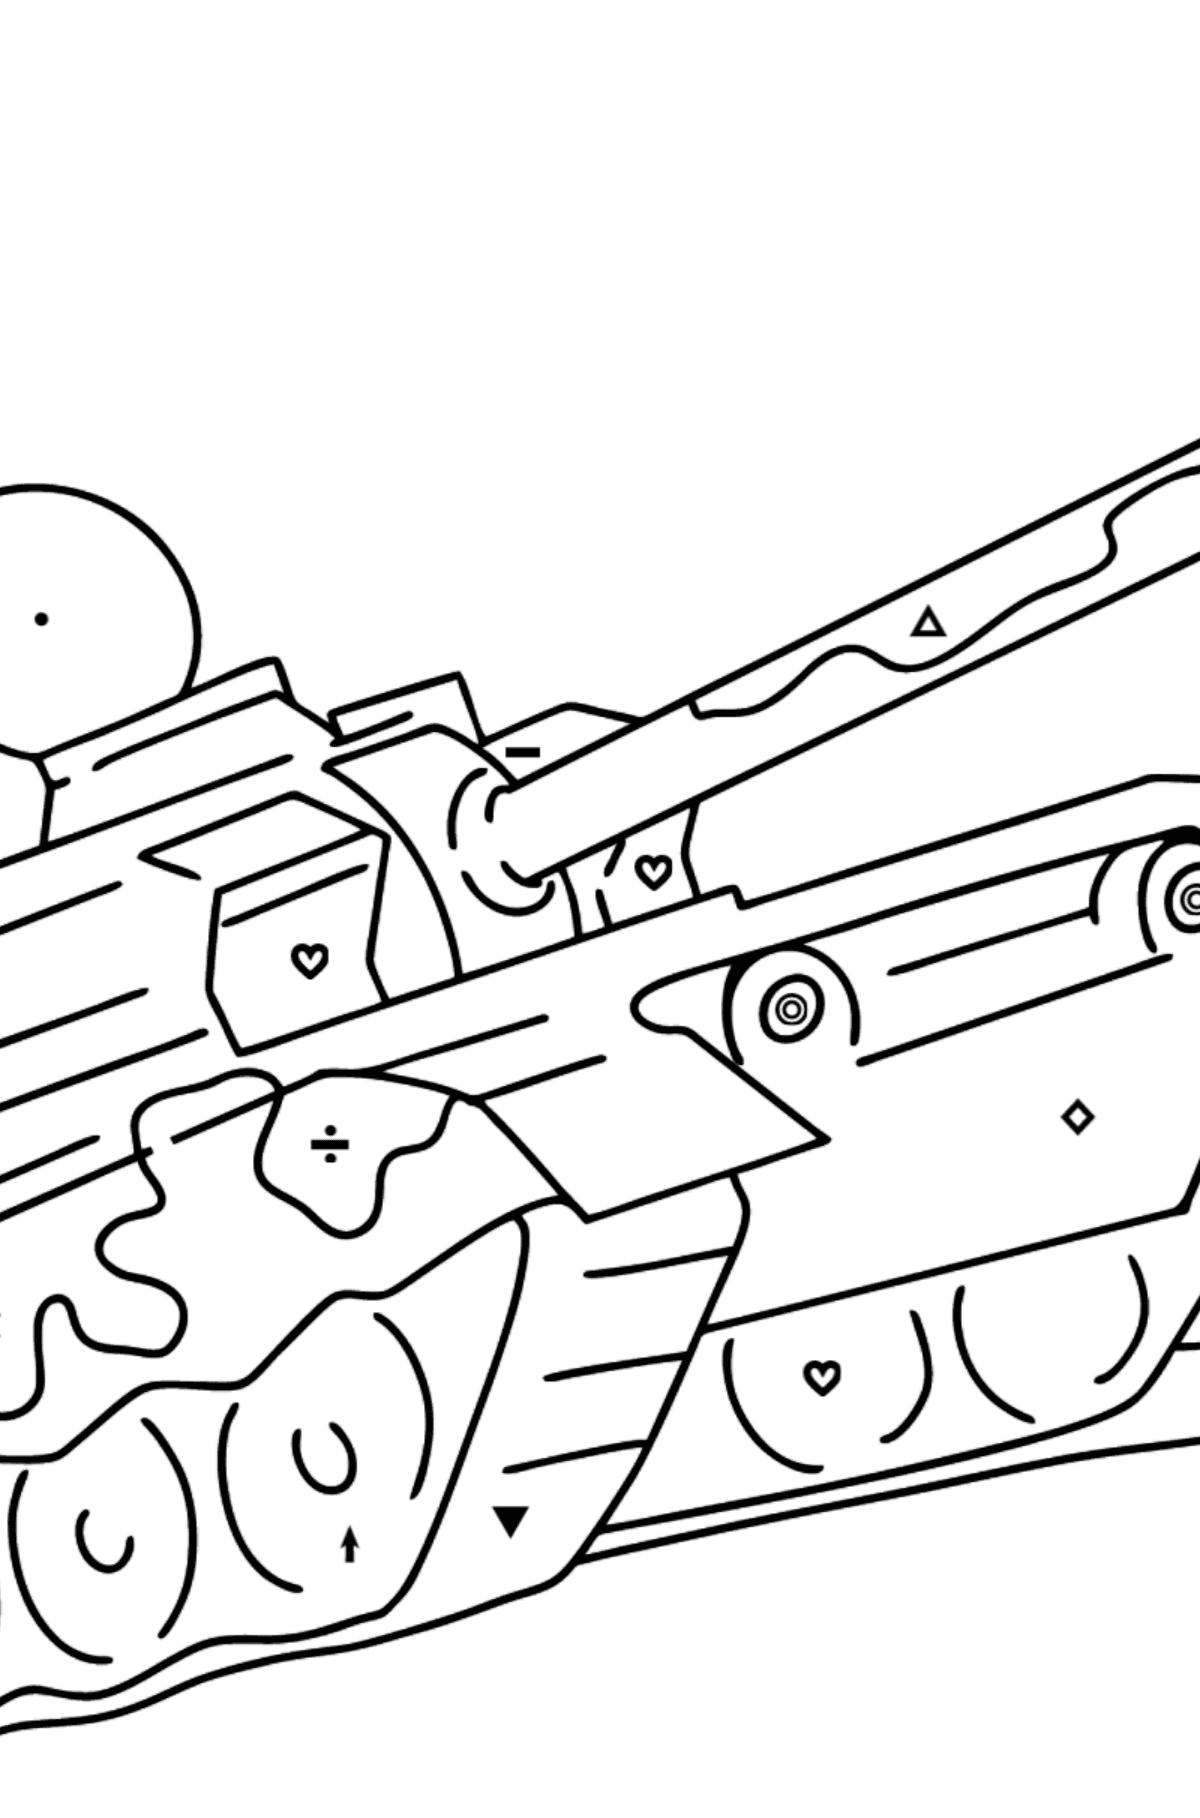 Розмальовка Військовий танк - Розмальовка по Символам і Геометричним Фігурам для дітей